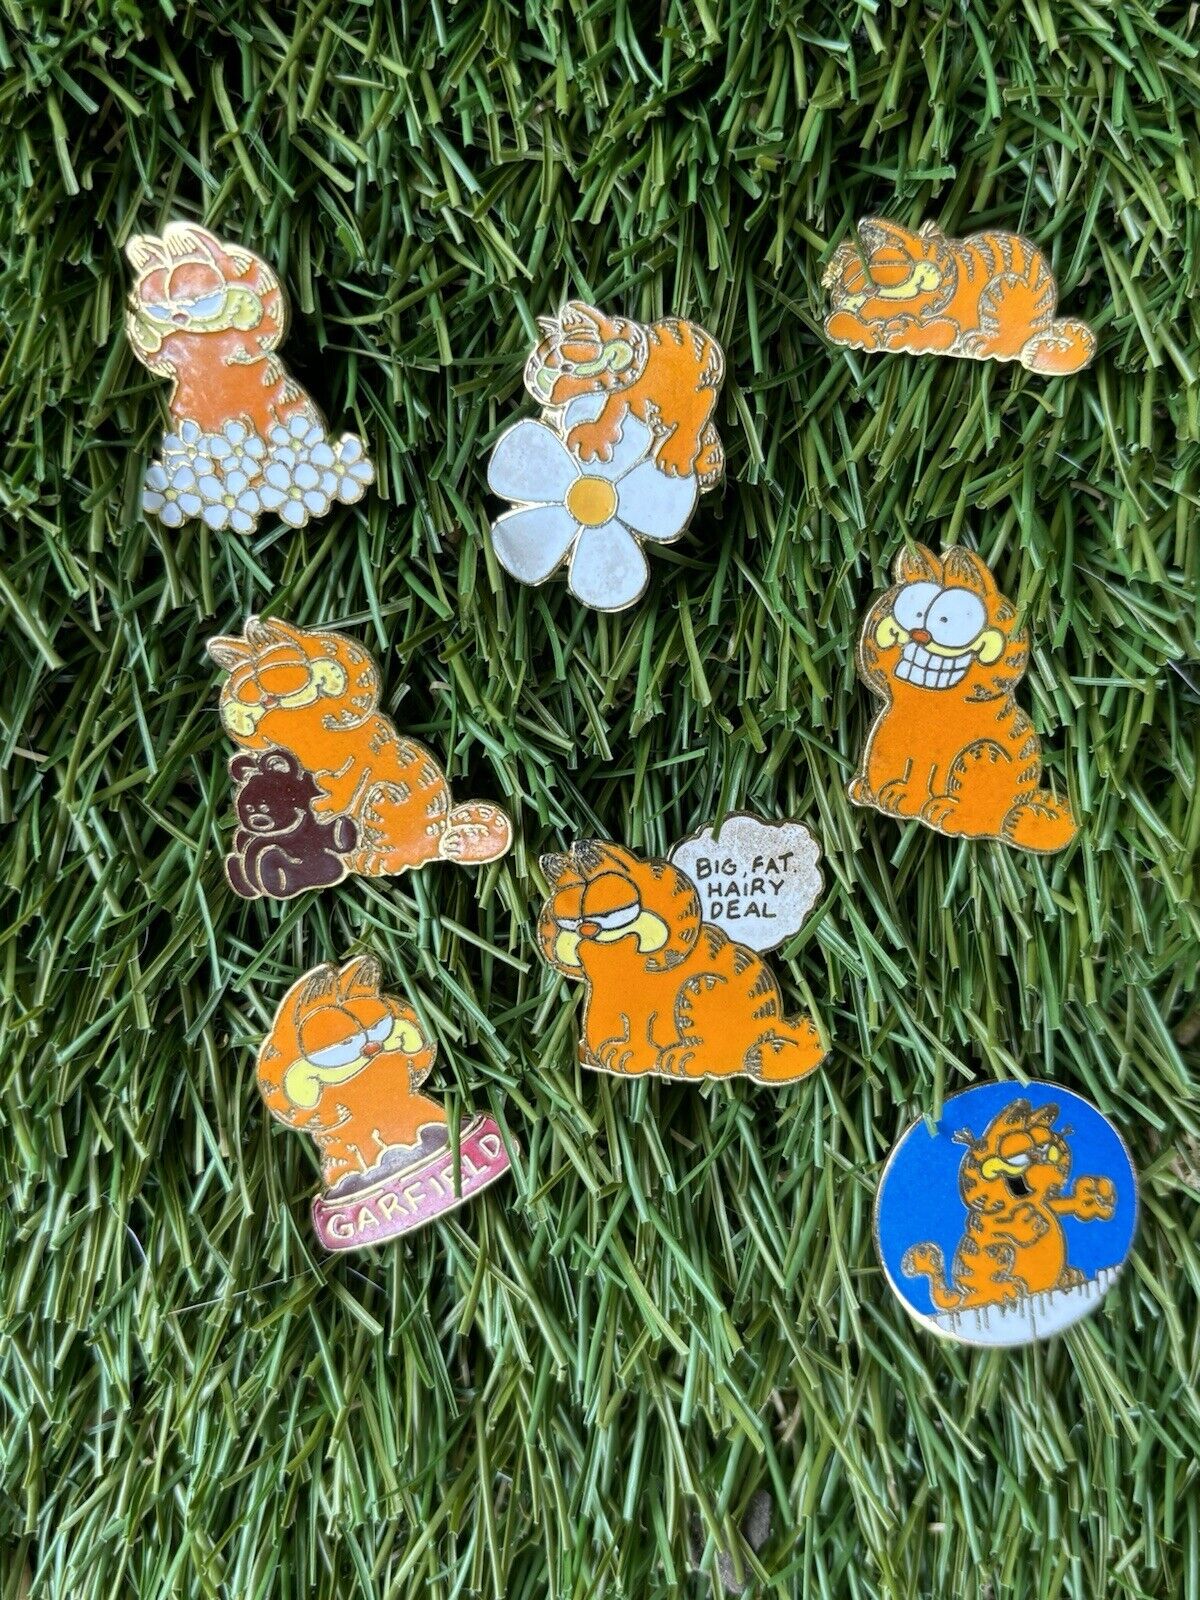 Vintage Garfield Enamel Pins Lot Of 8 1970s